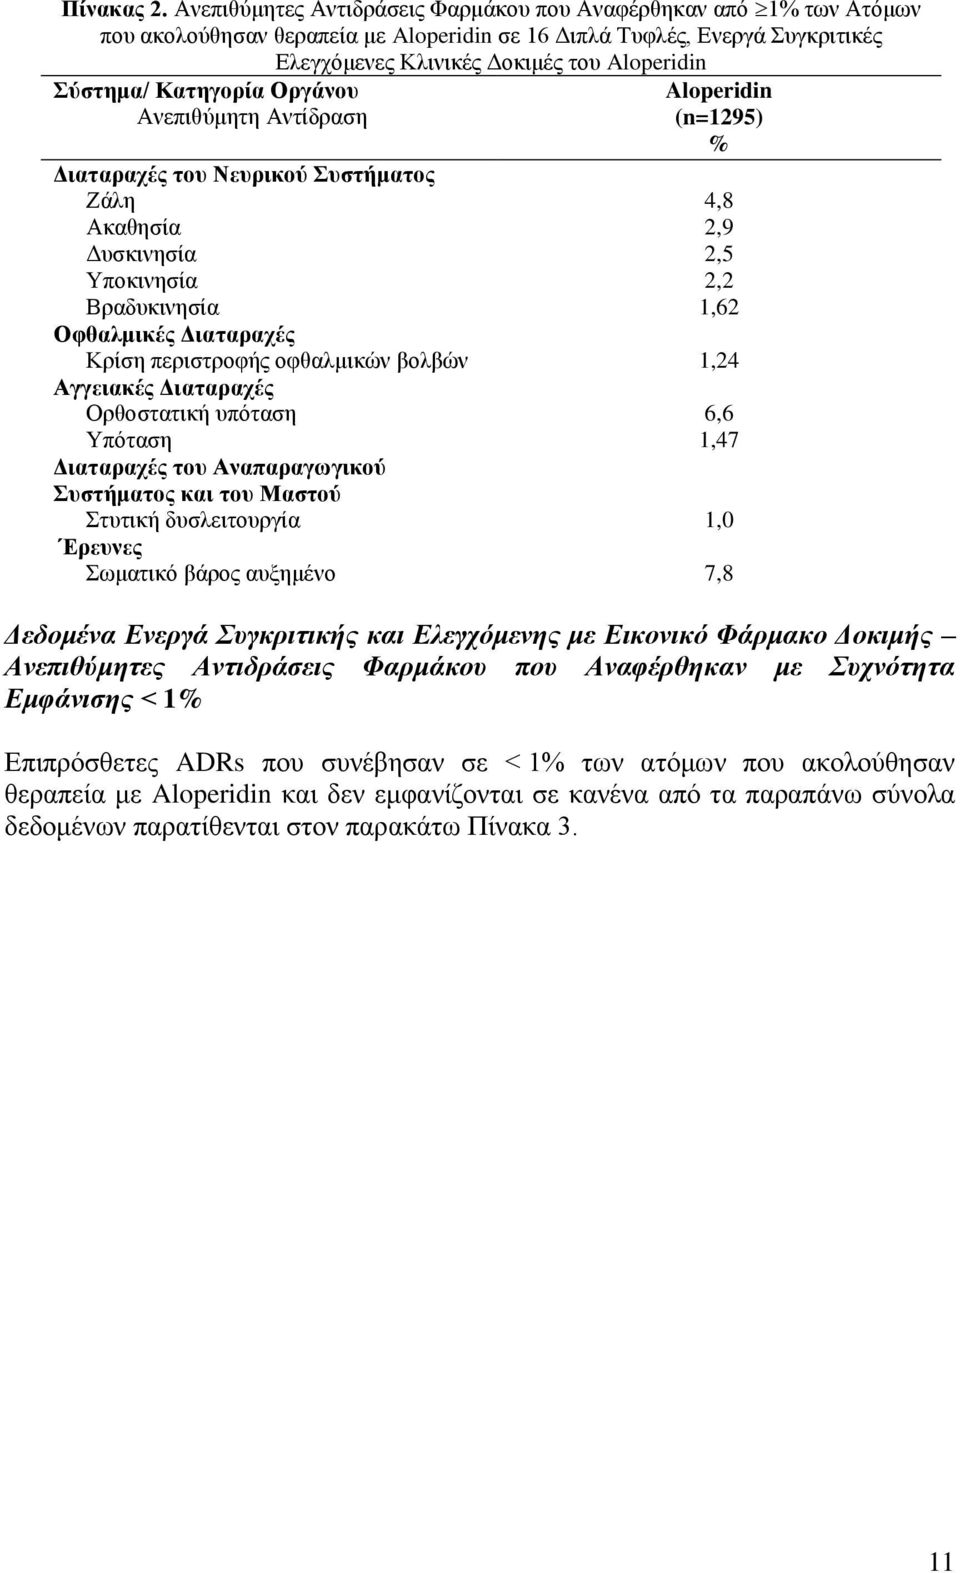 Κατηγορία Οργάνου Ανεπιθύμητη Αντίδραση Aloperidin (n=1295) % Διαταραχές του Νευρικού Συστήματος Ζάλη 4,8 Ακαθησία 2,9 Δυσκινησία 2,5 Υποκινησία 2,2 Βραδυκινησία 1,62 Οφθαλμικές Διαταραχές Κρίση